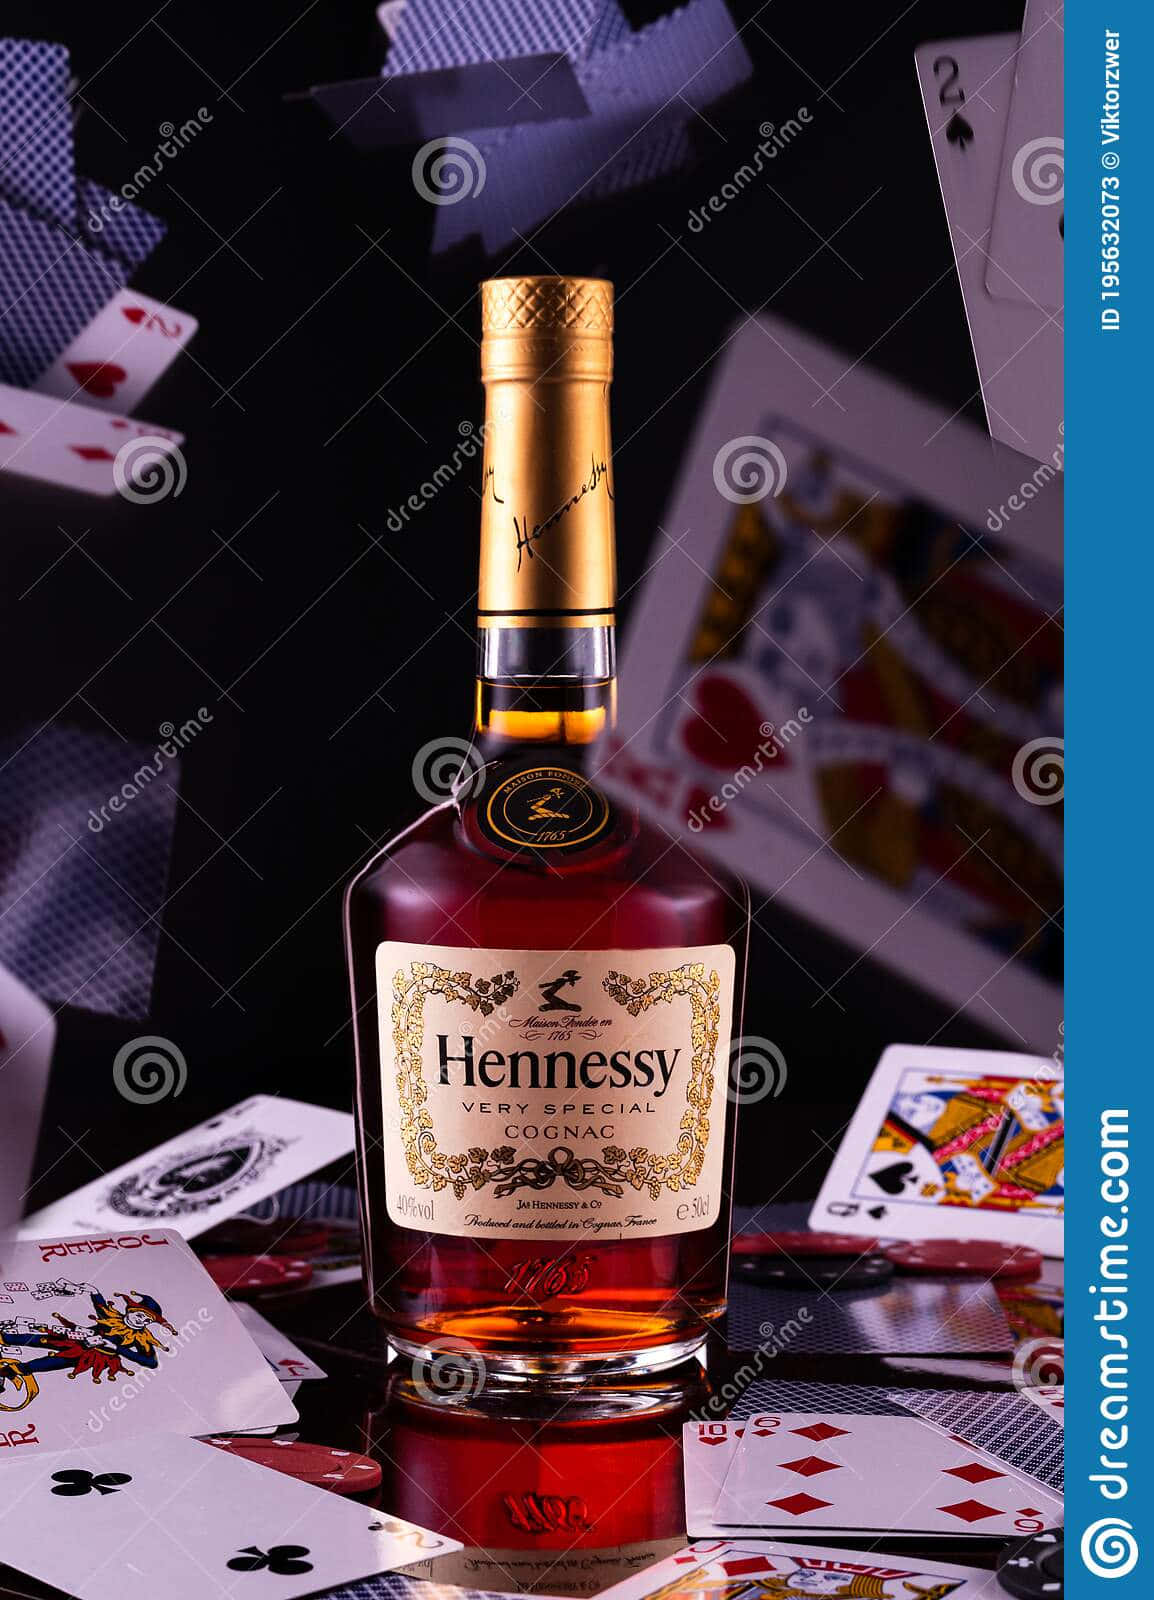 Hennessywhiskeyflaska Med Spelkort, Lagerfoto Bild För Datorskärmen Eller Mobilskärmen. Wallpaper